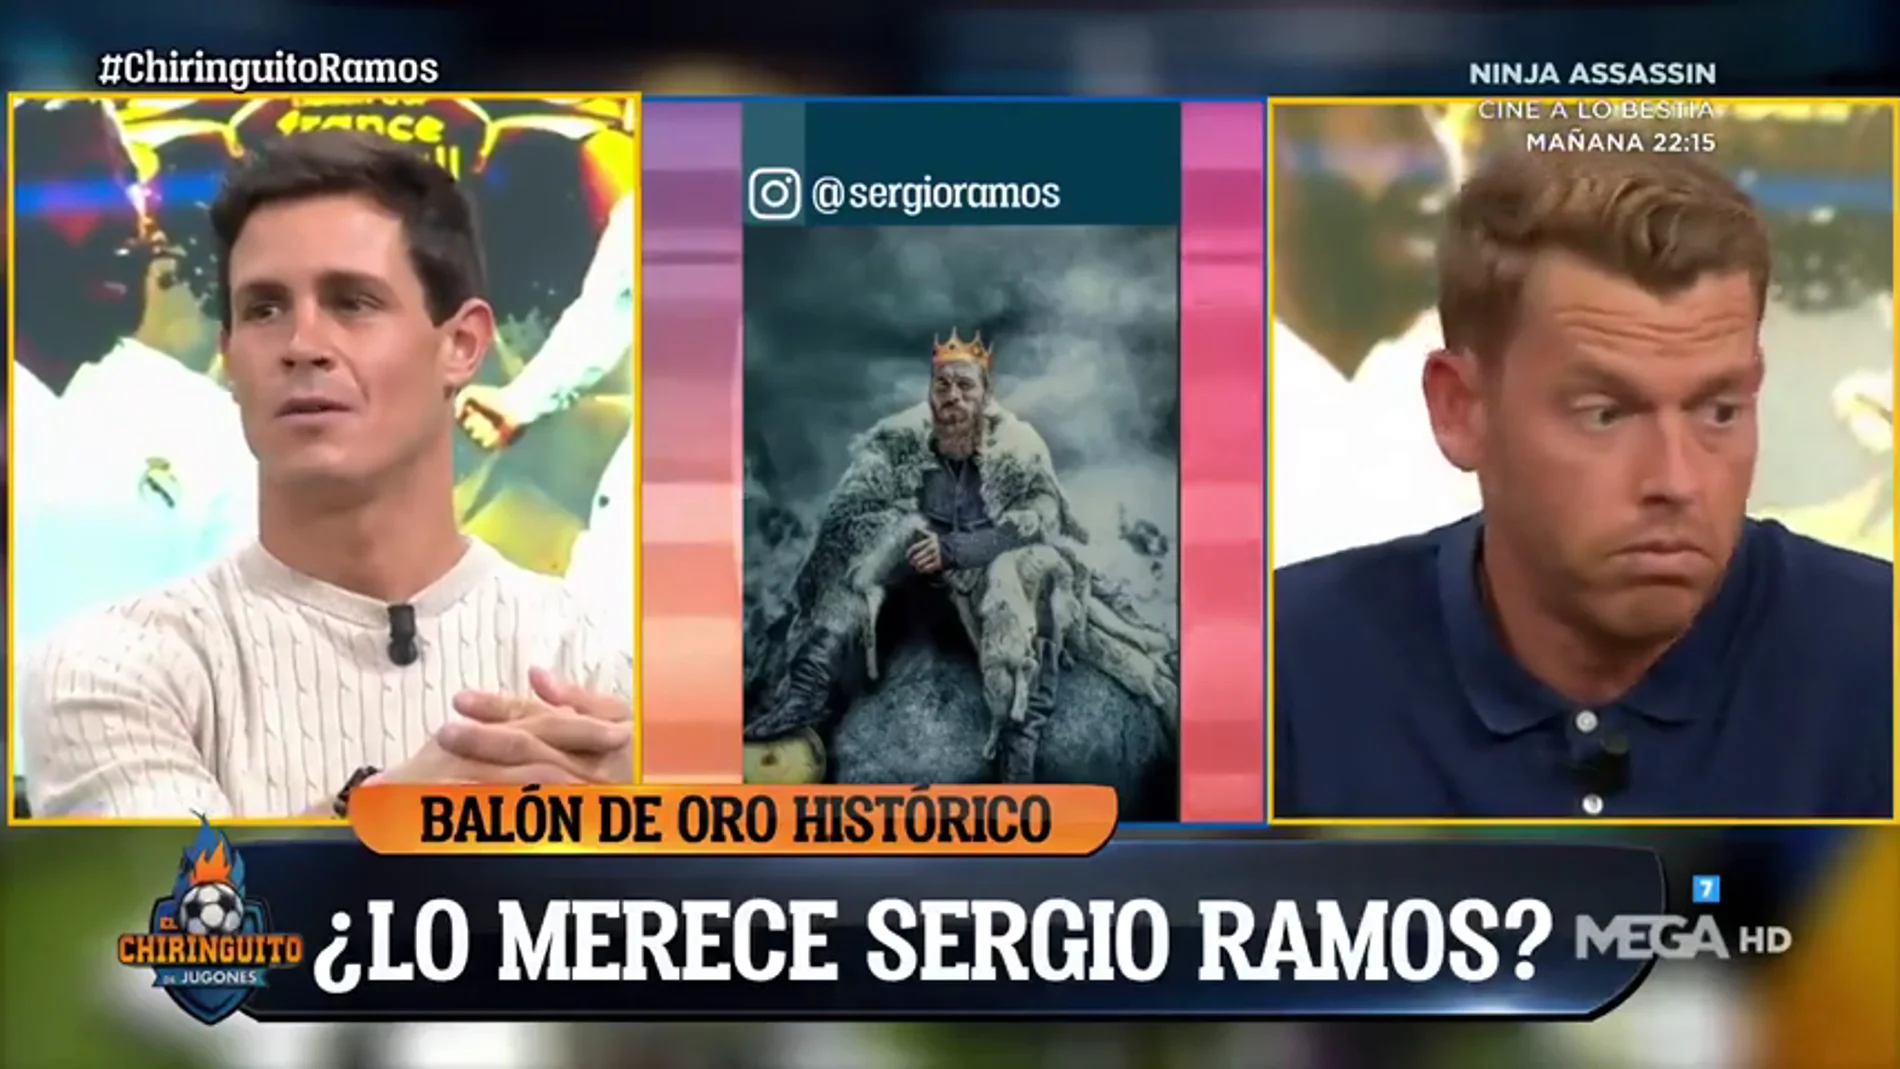 Jota Jordi hace estallar a la bancada madridista: "¿Ramos Balón de Oro? Esto es de risa"